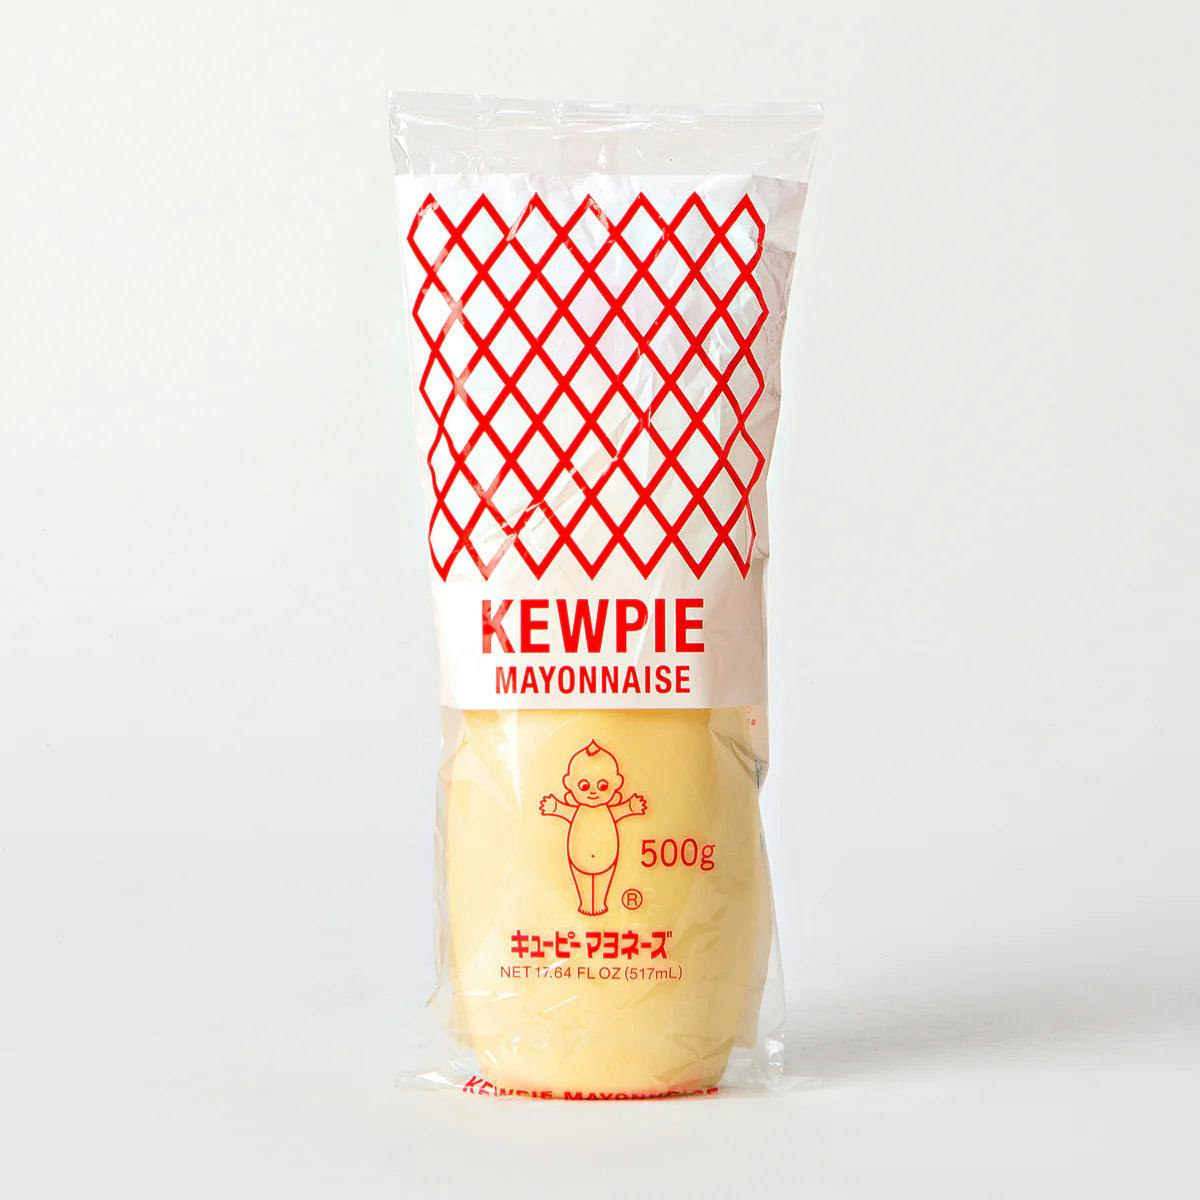 Kewpie Mayonnaise, 450g